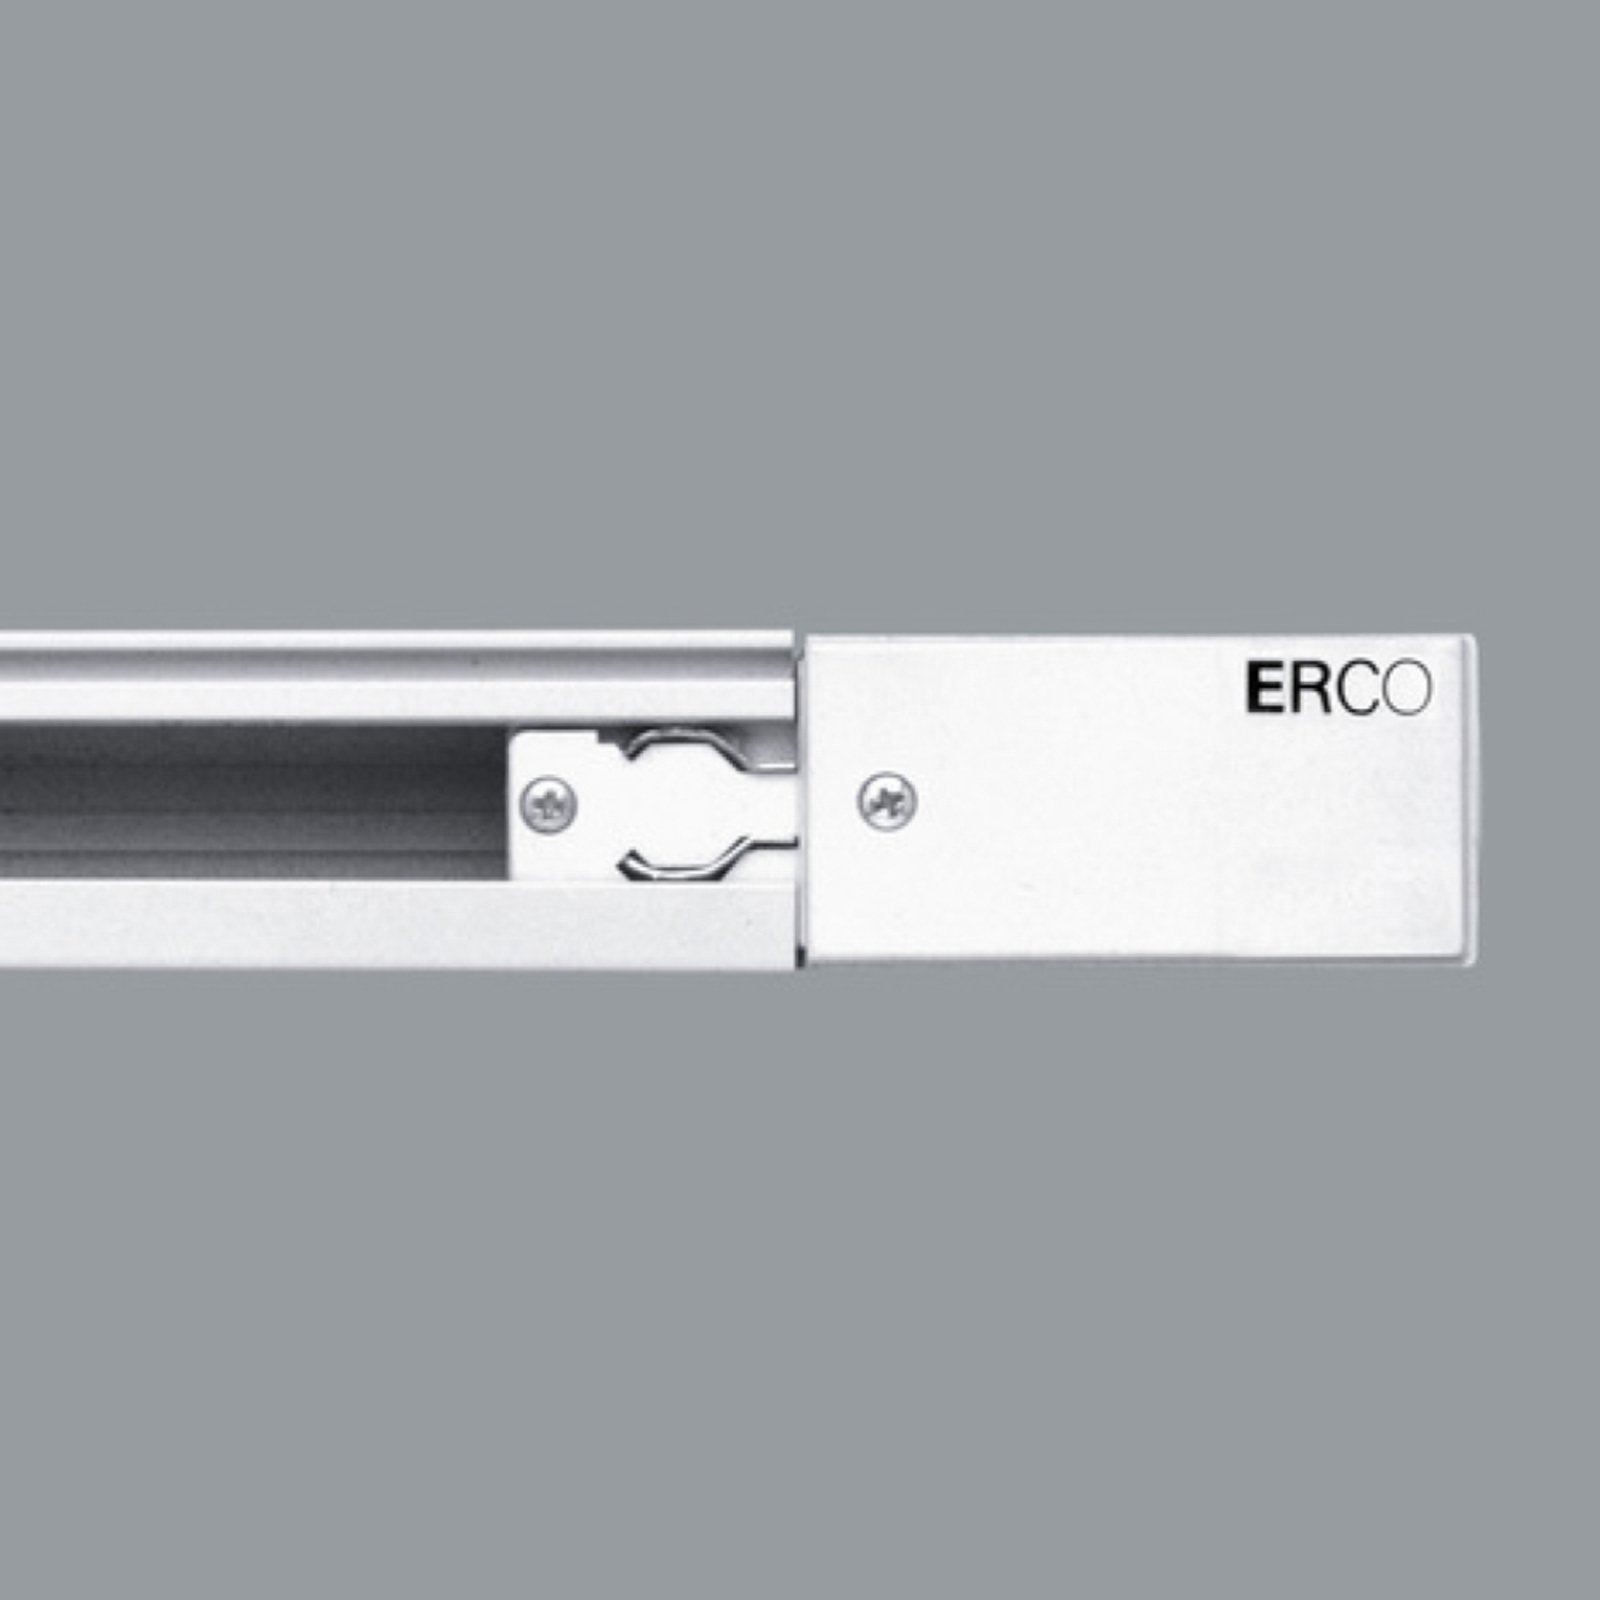 ERCO 3-fas-anslutning skyddsledare höger, vit